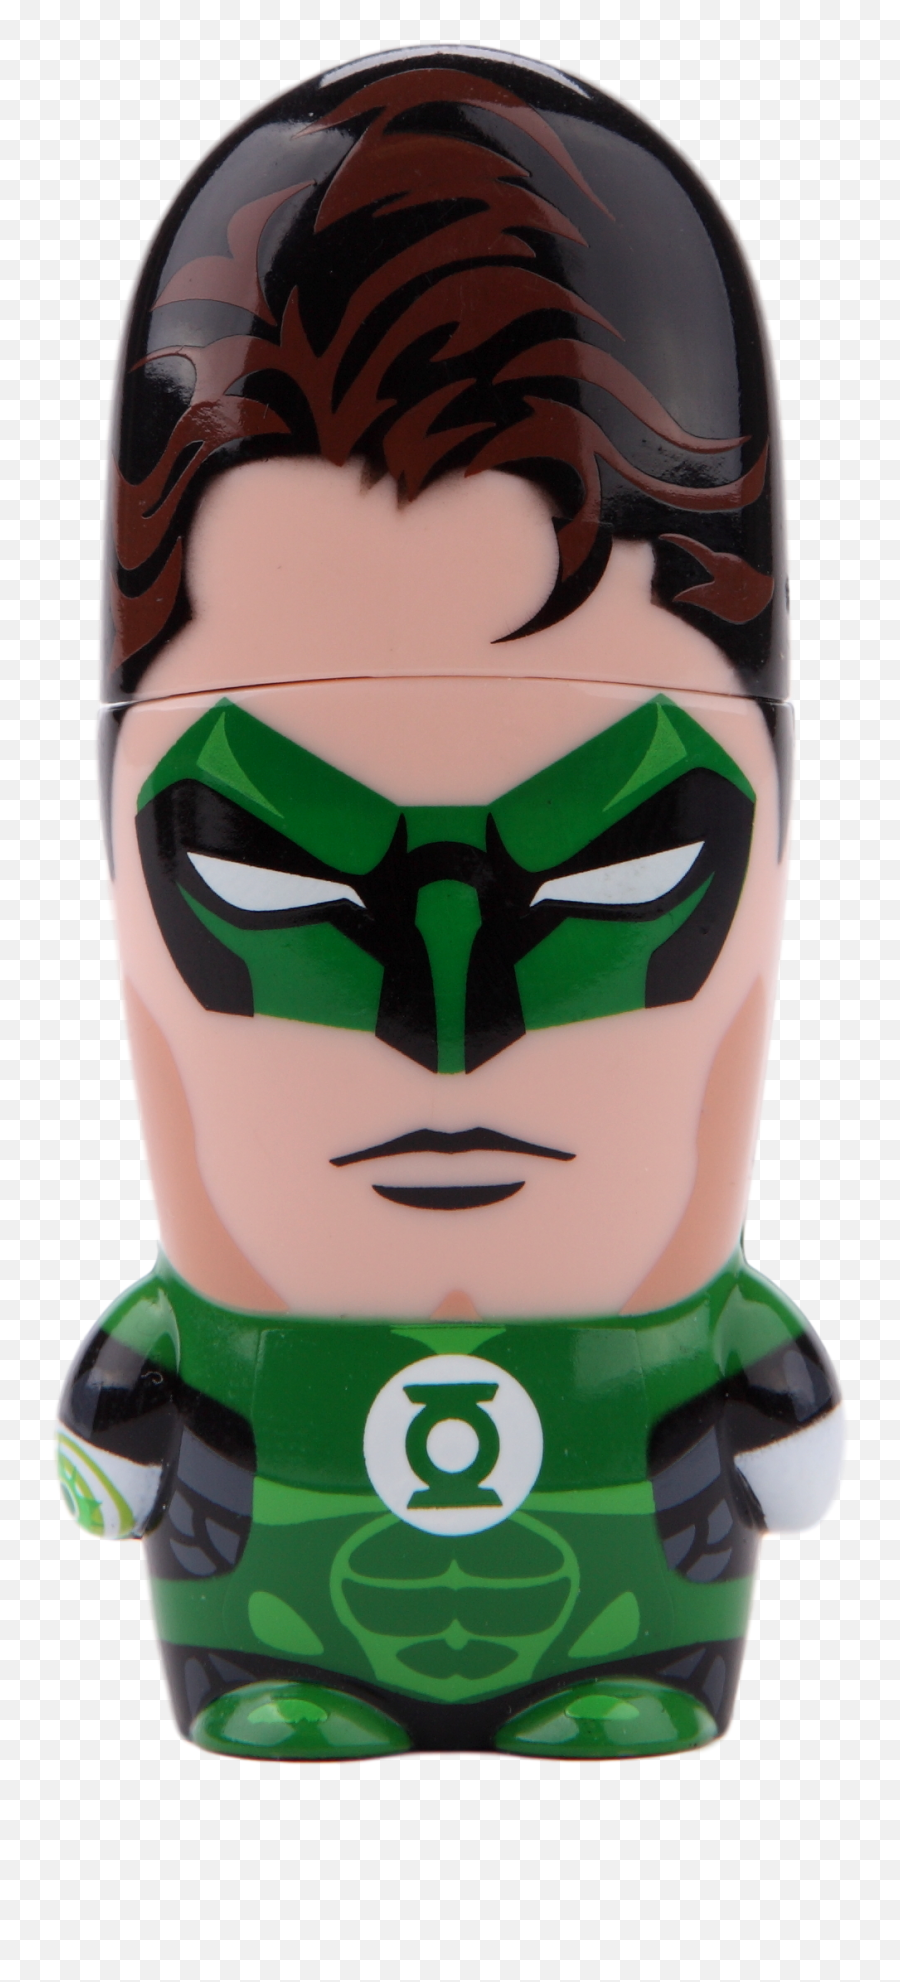 Download Hal Jordan Green Lantern - Green Lantern Png,Green Lantern Png